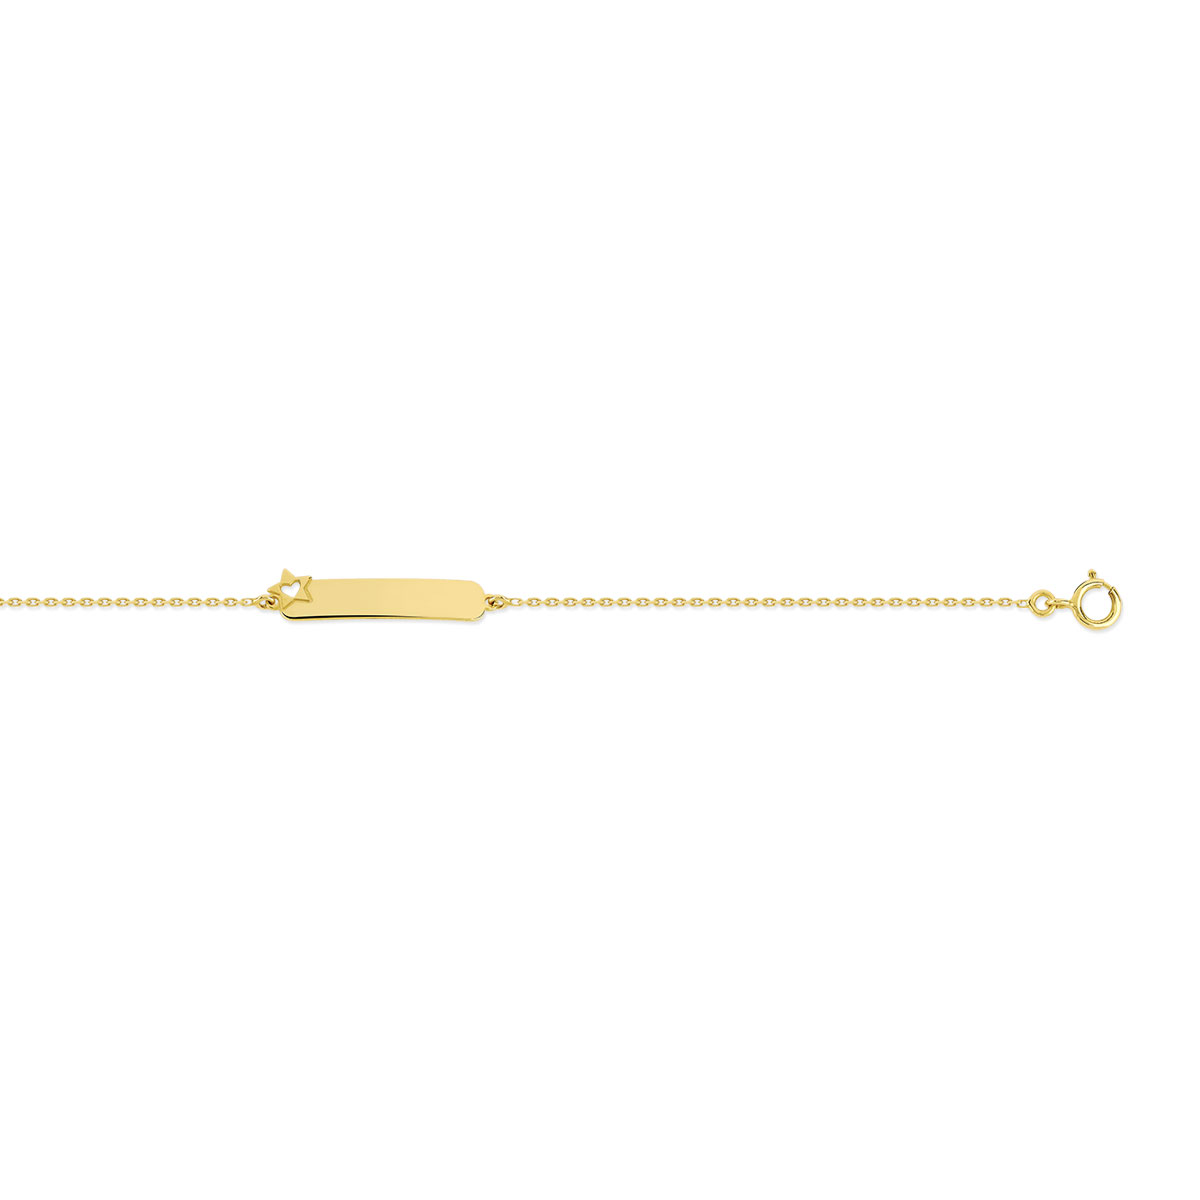 Bracelet identité or 375 jaune personnalisable étoile ajourée coeur 14 cm